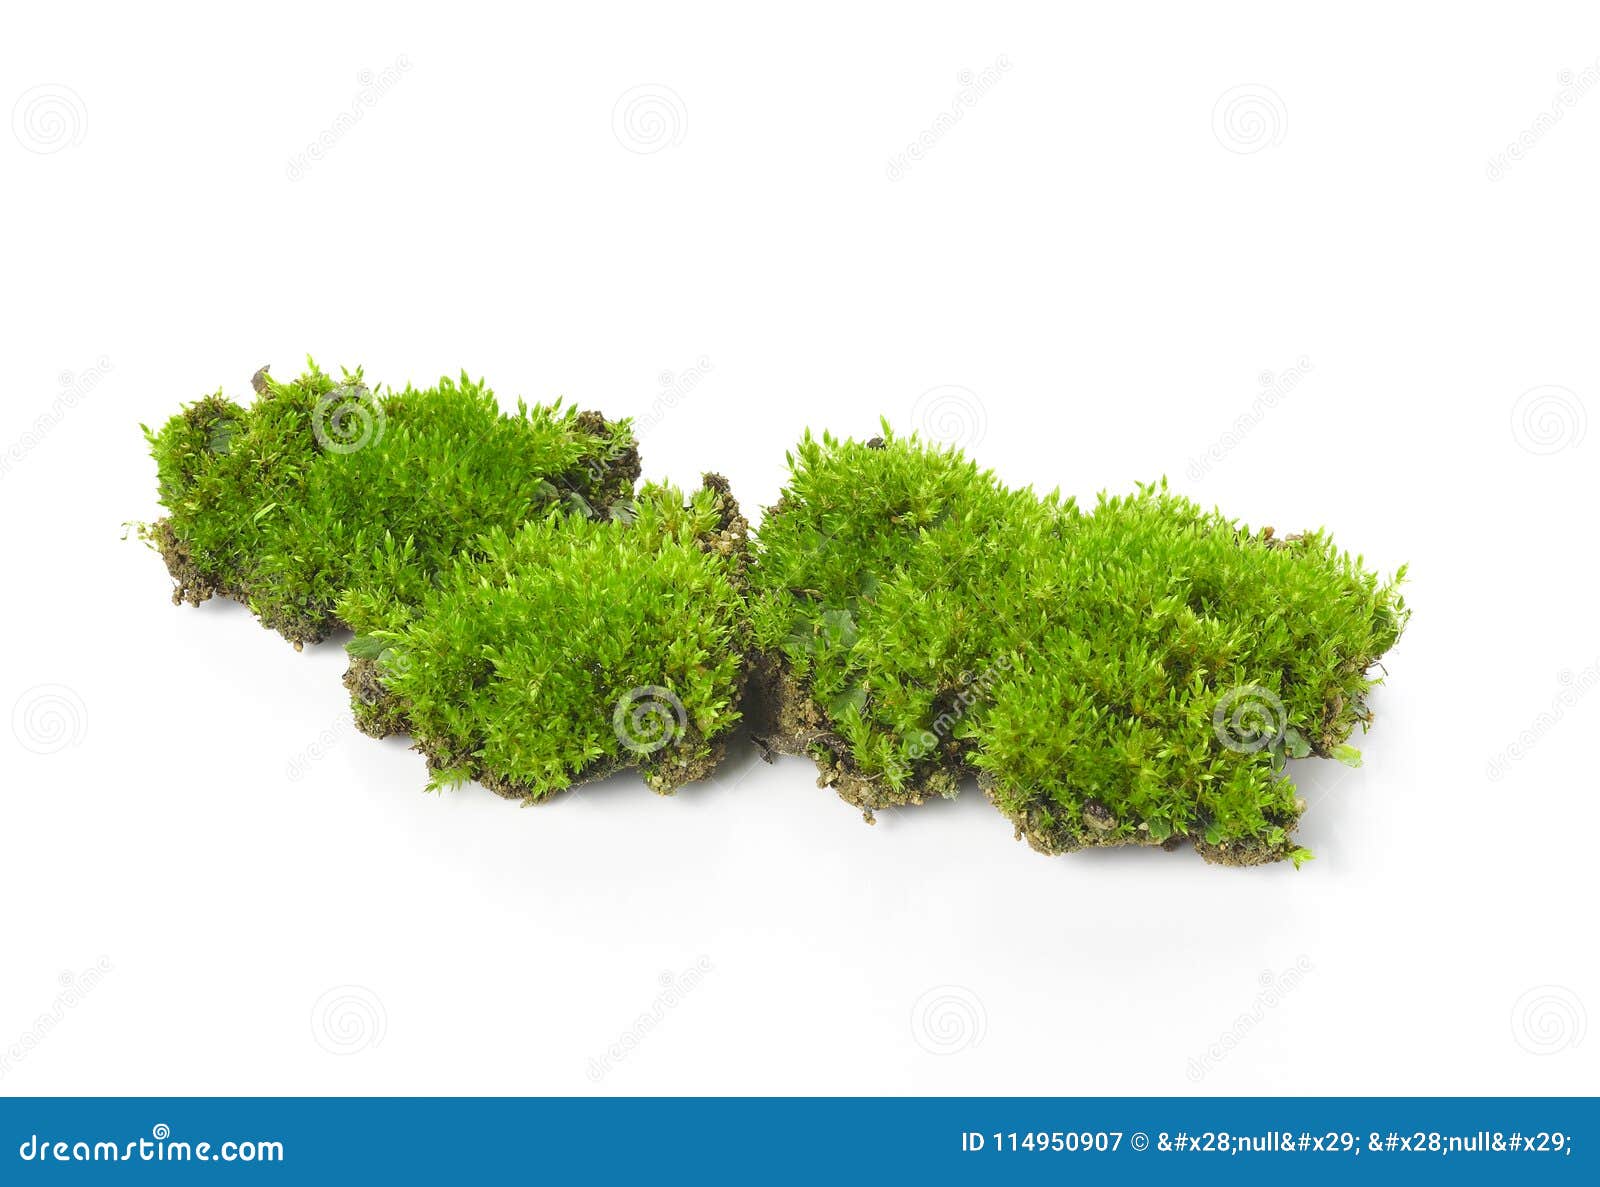 green moss  on white bakground.